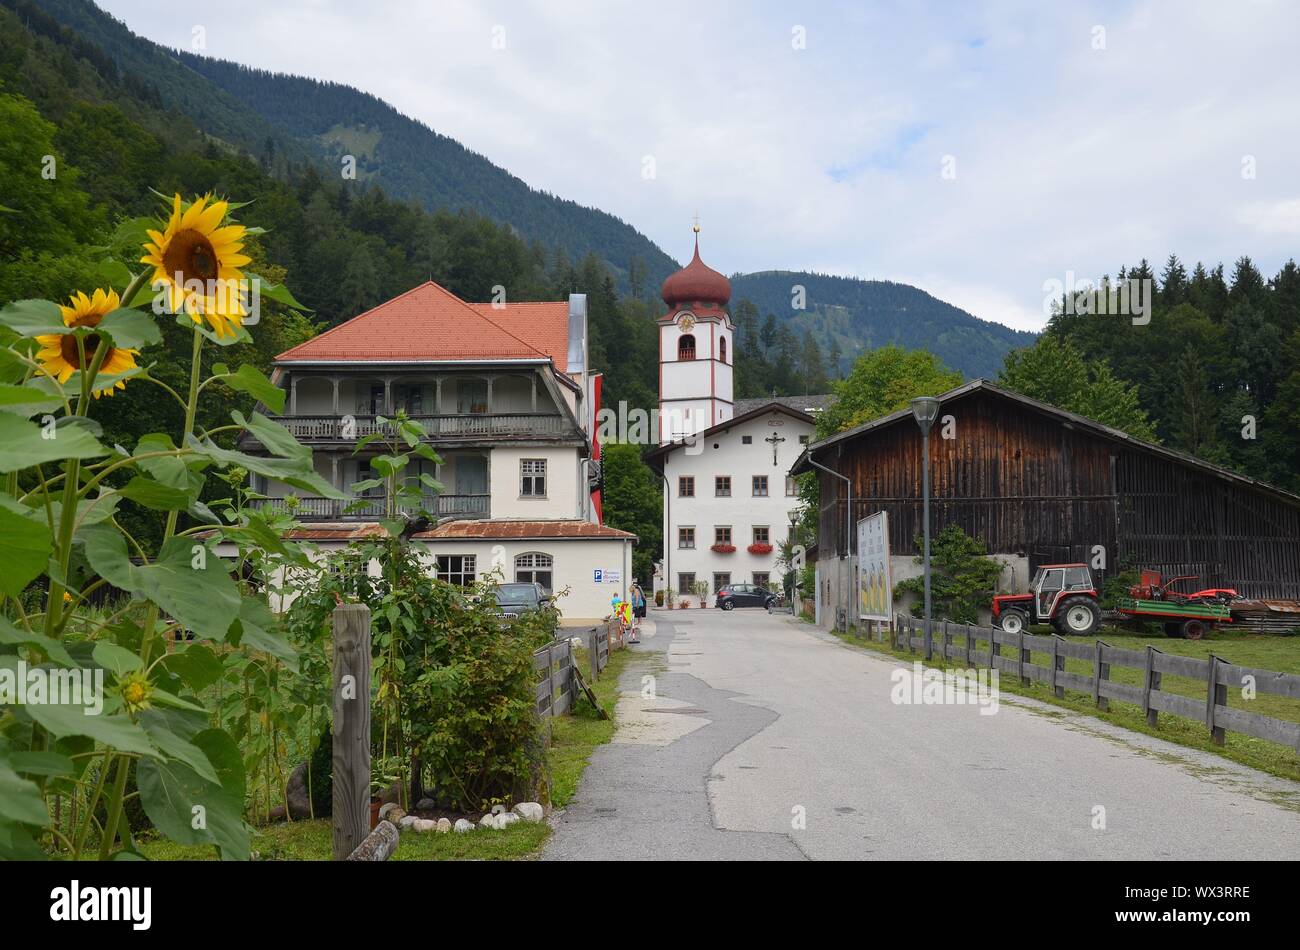 Basilique Die von Mariathal, Kramsach, bei de Rattenberg, Tirol, Österreich Banque D'Images